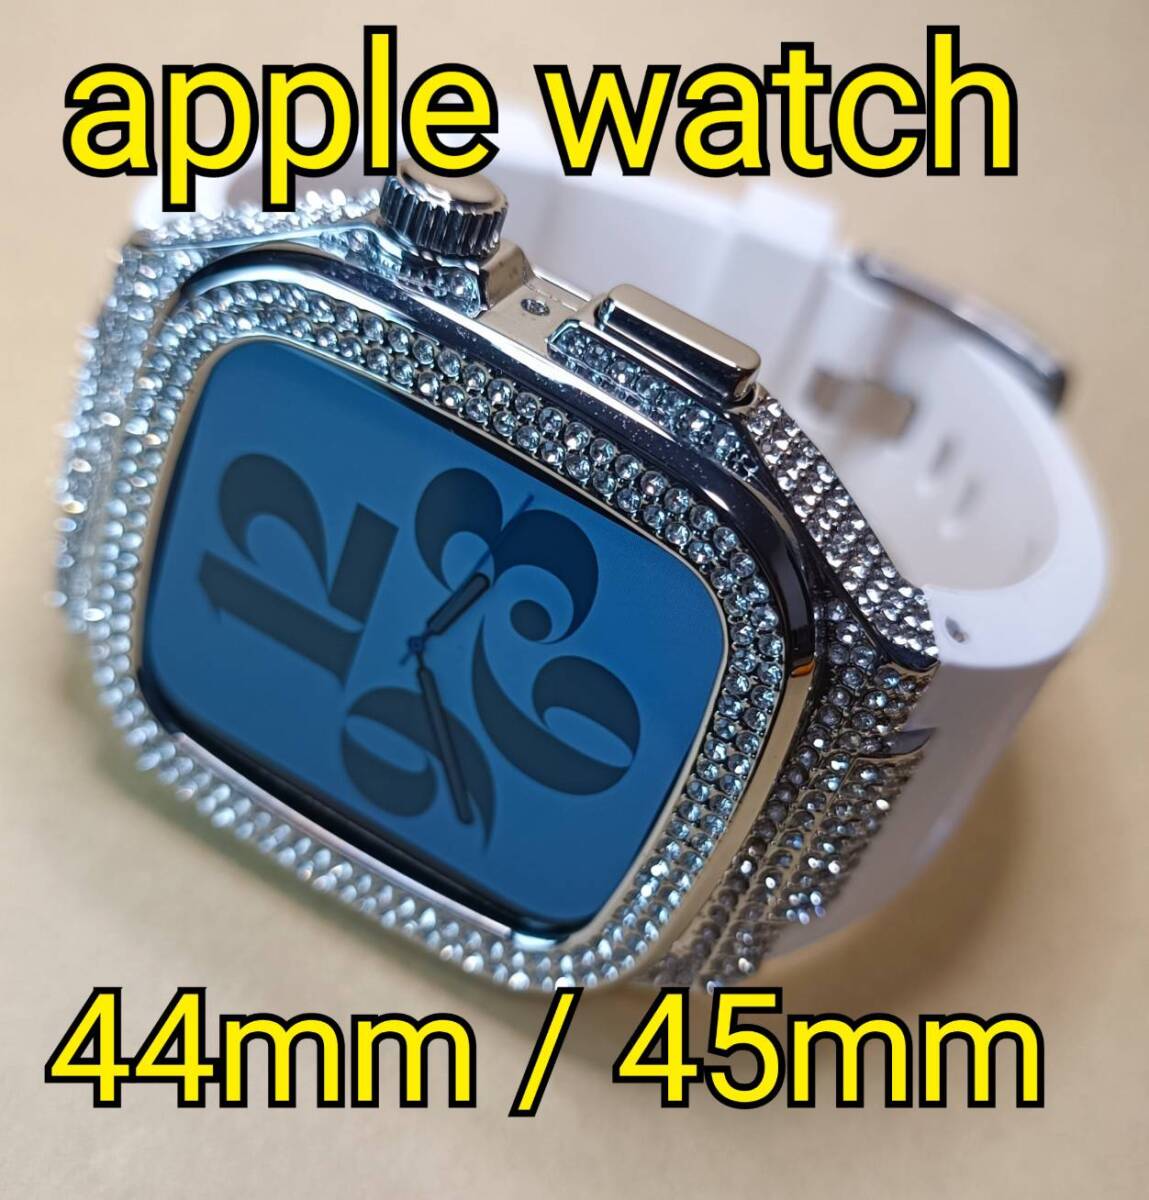 銀白 44mm 45mm apple watch アップルウォッチ ケース ダイヤ ジルコニア ストーン グリッター ICED OUT GLITTER カスタム カバー メタル_画像1